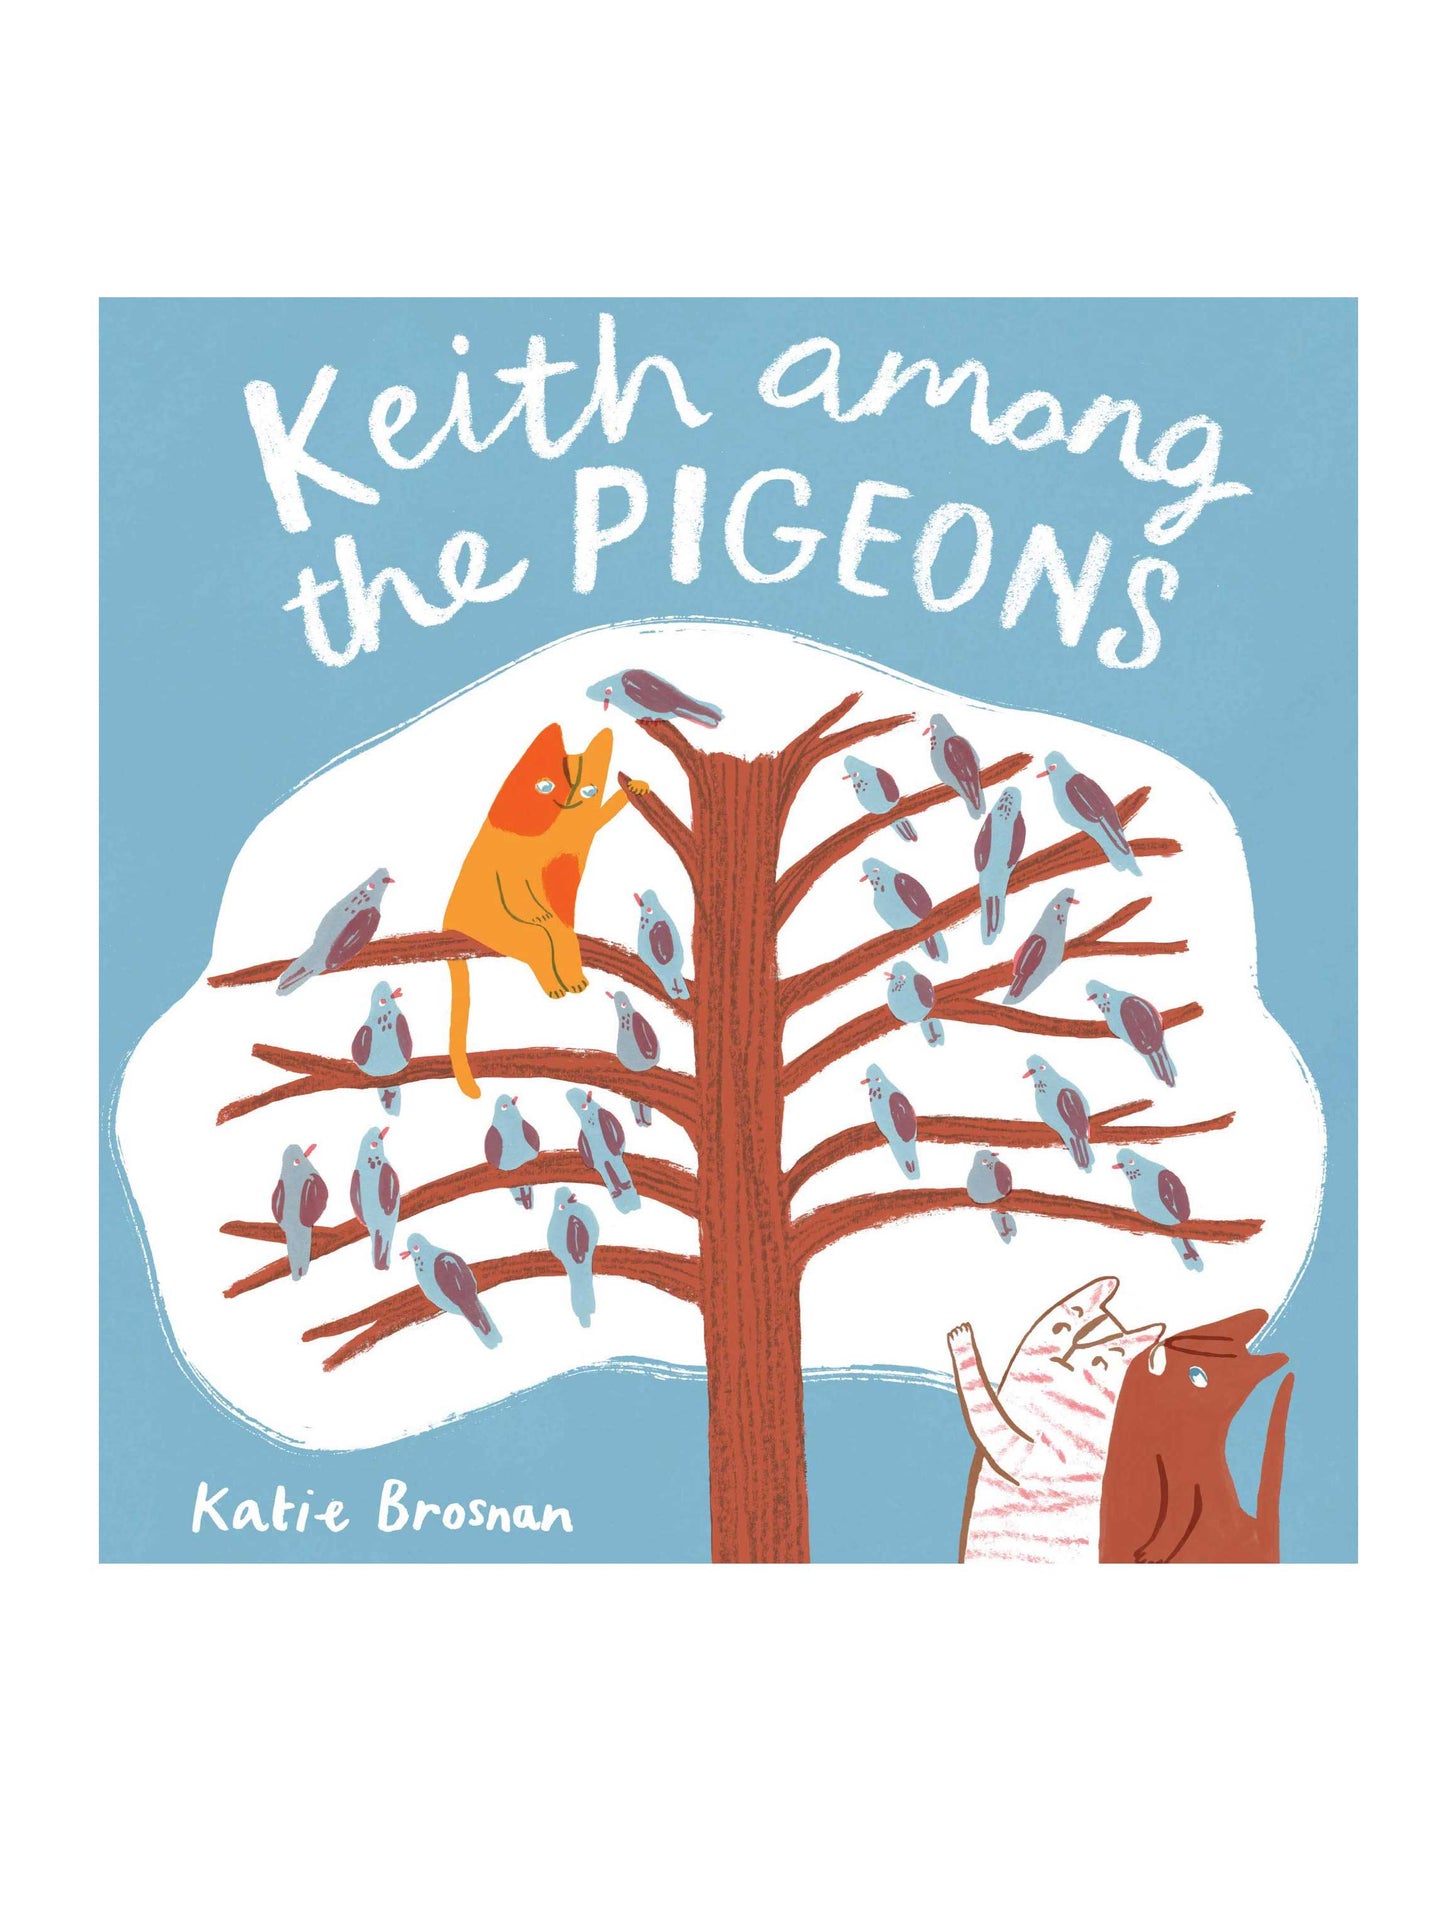 Keith Among the Pigeons